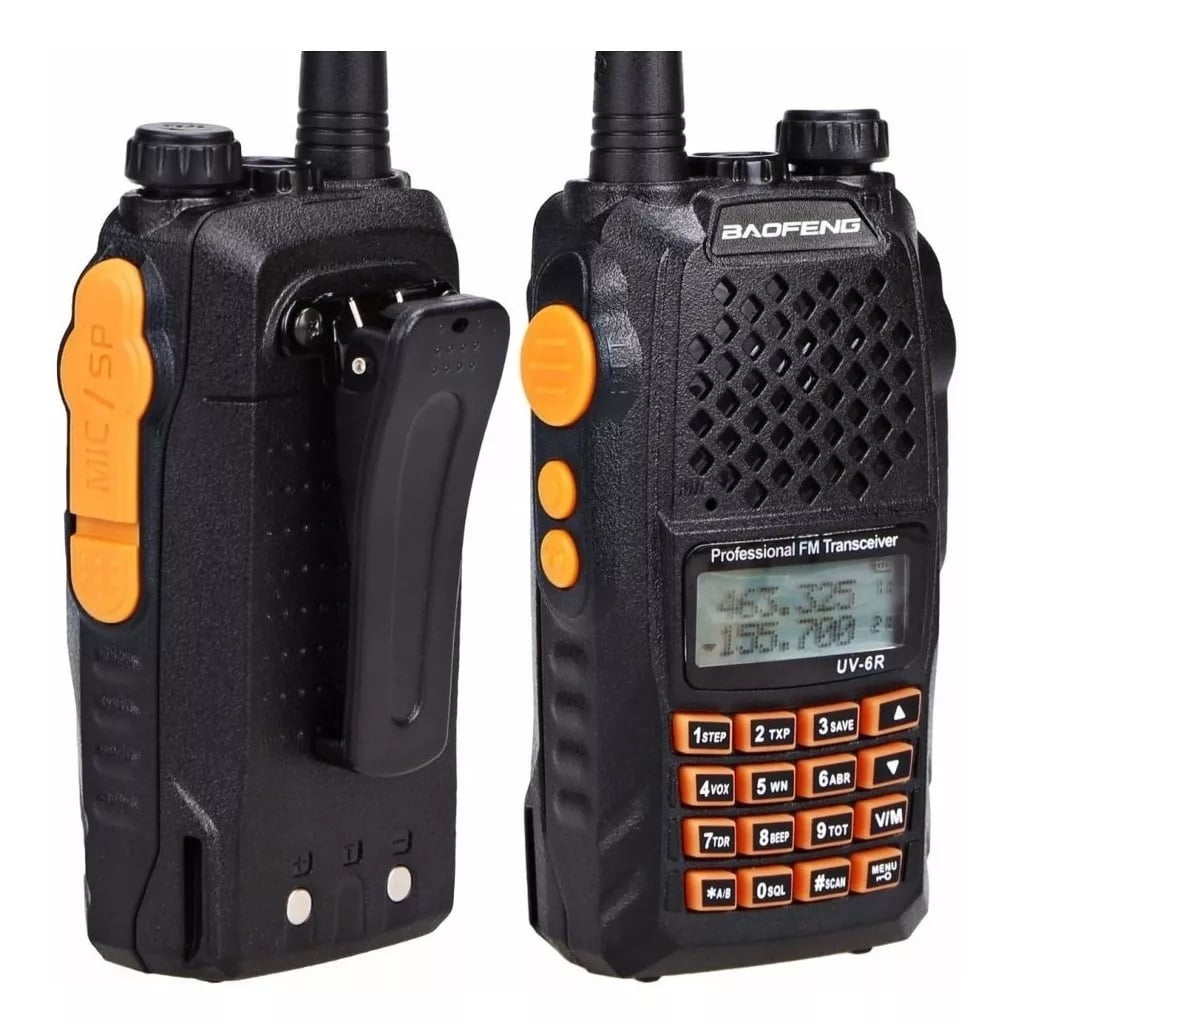 Radio comunicador Dual Band Baofeng Uv-6r 136-174-400-520 Mhz - Original